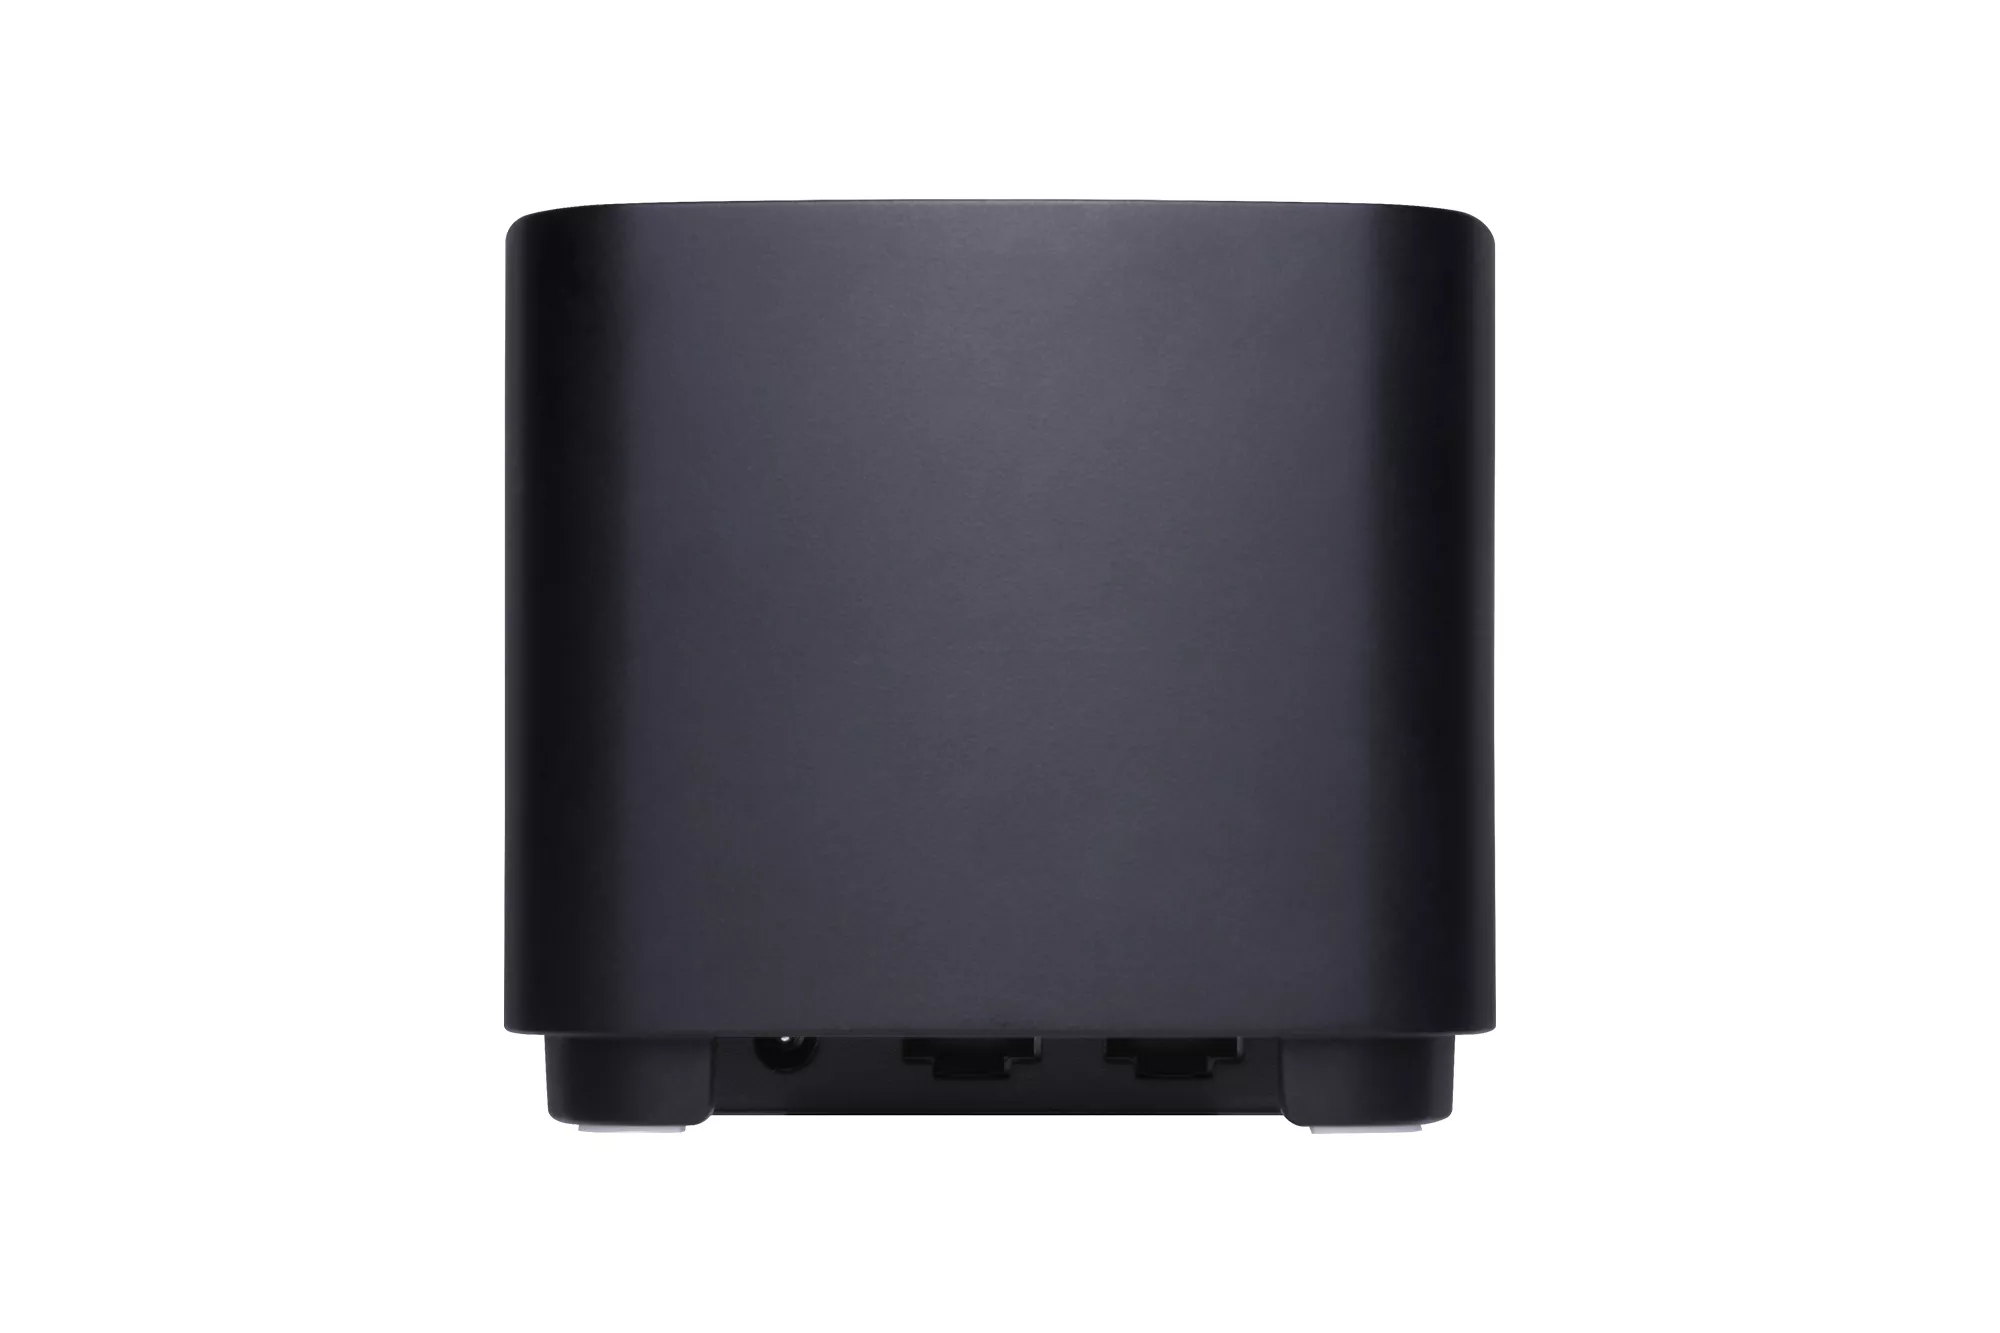 Achat ASUS ZenWiFi XD4 PLUS 1 pack Black xDSL Router au meilleur prix